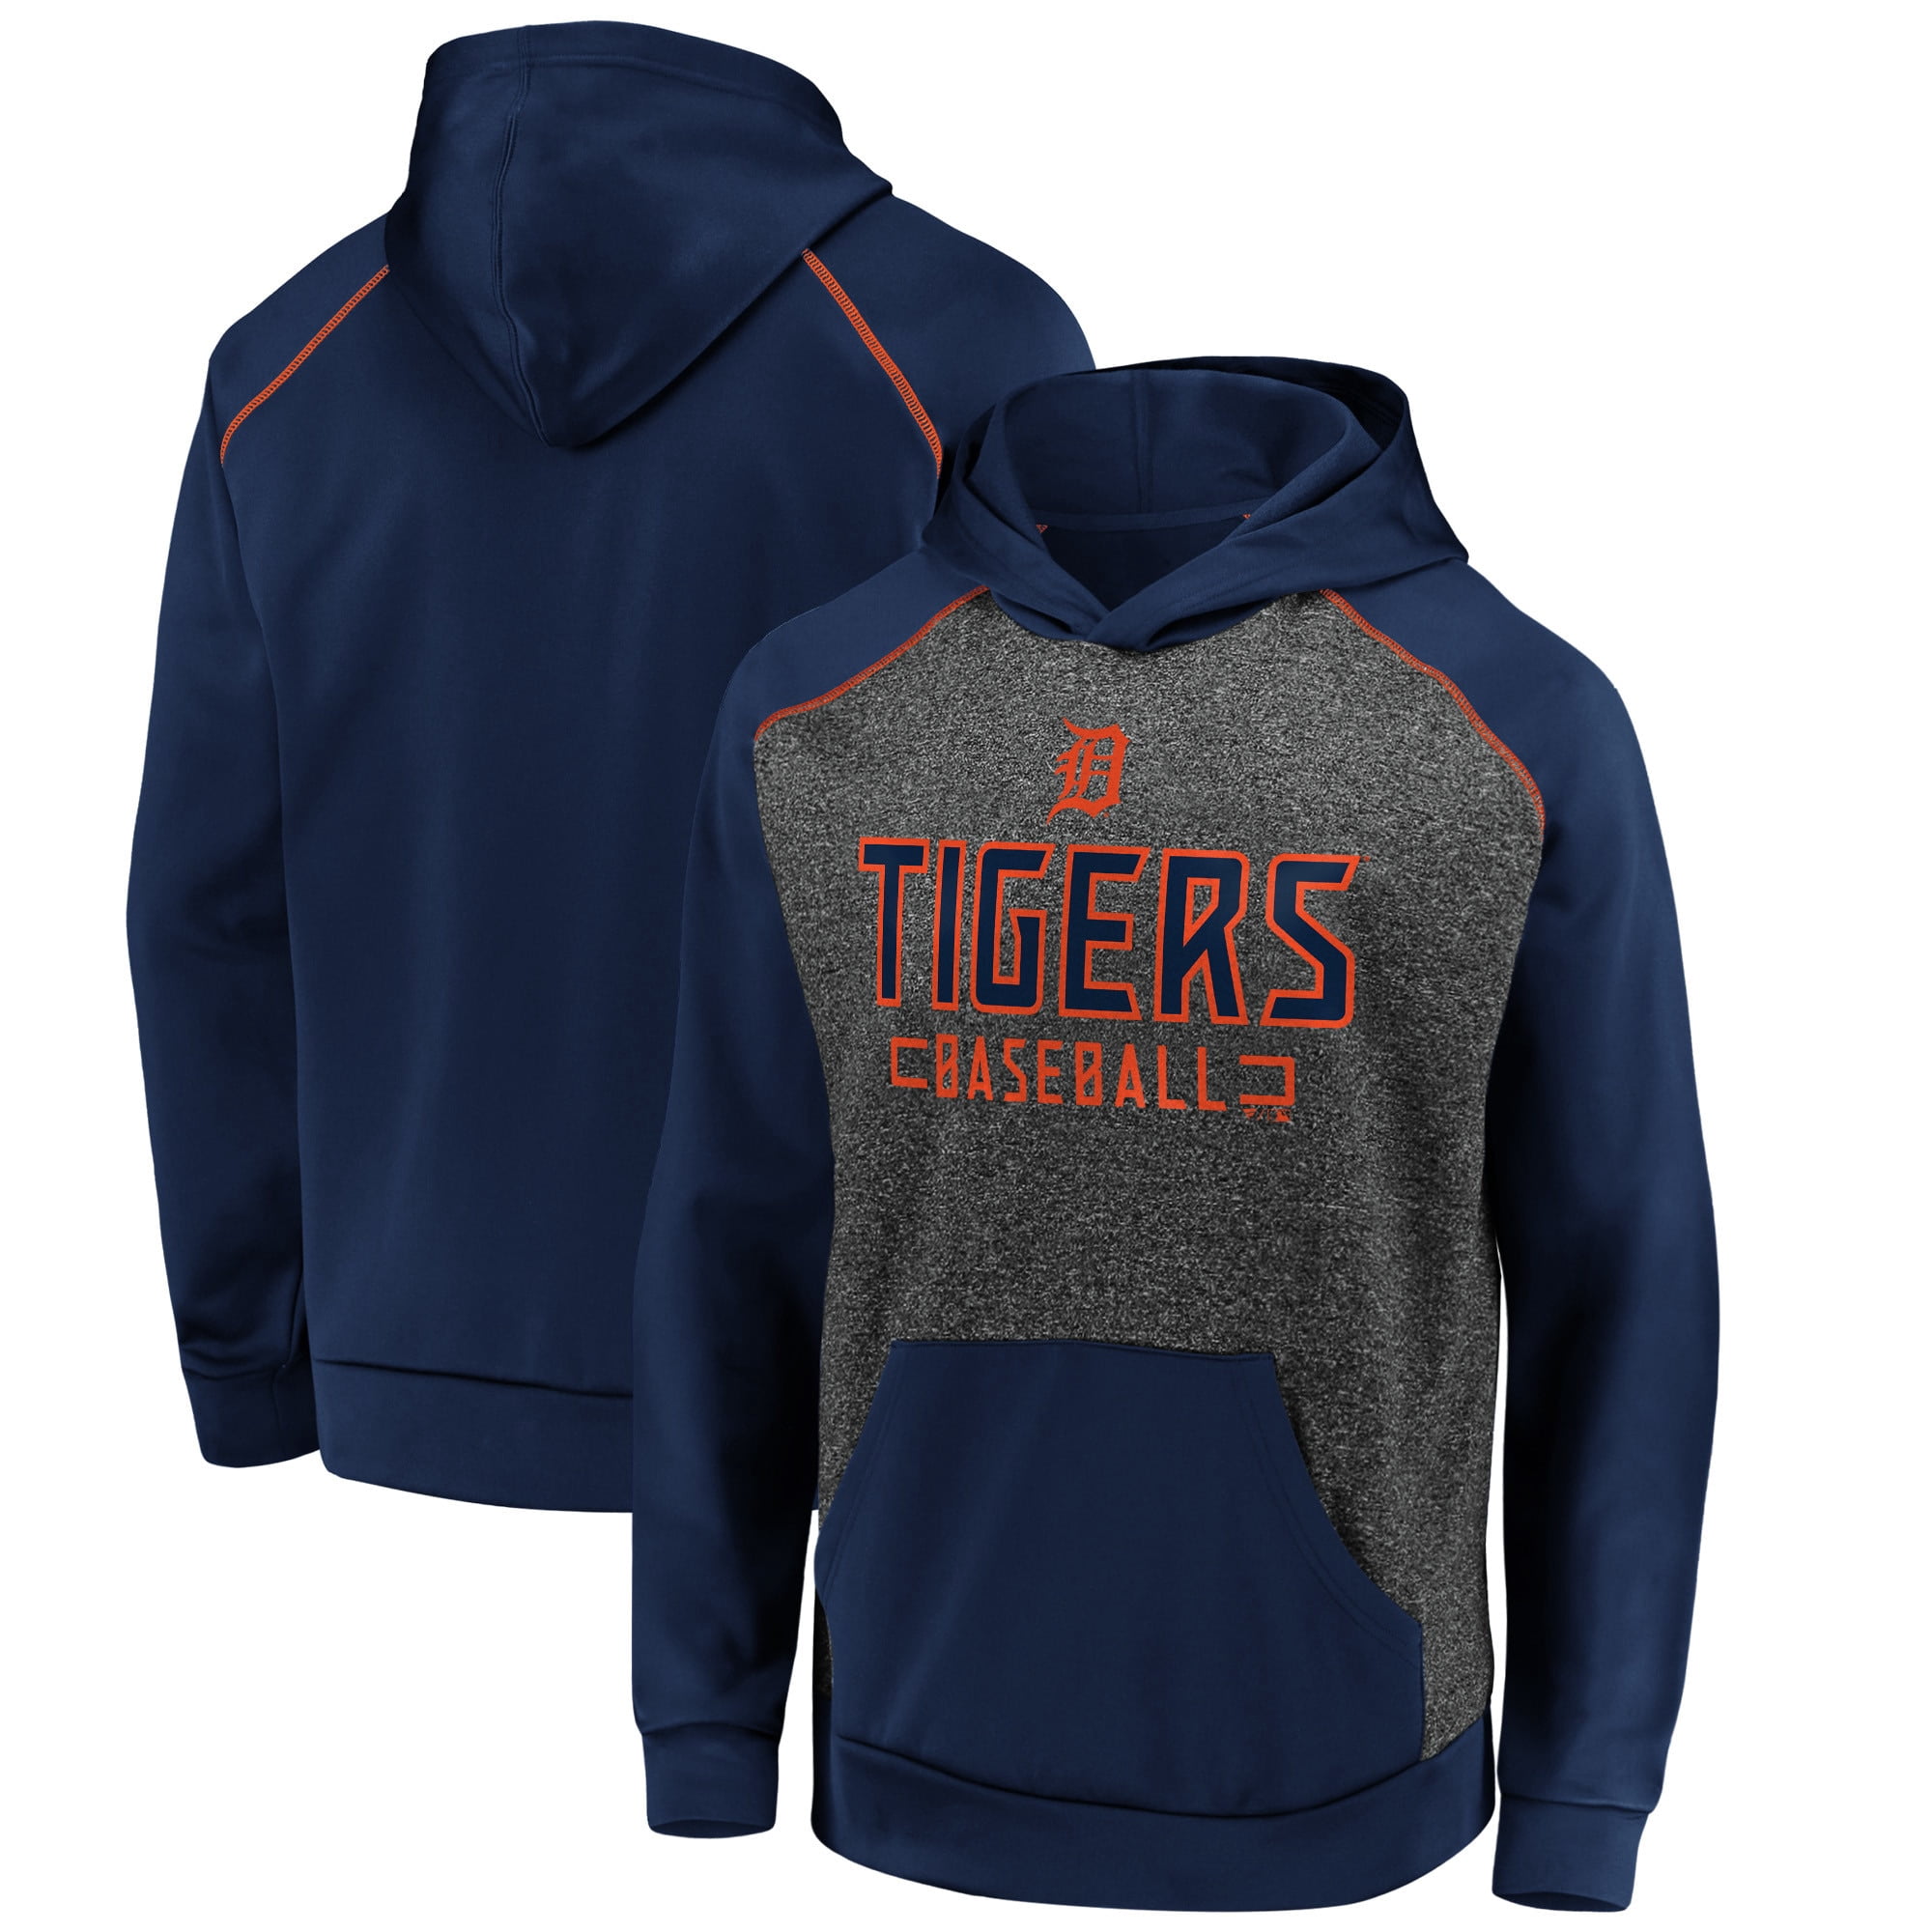 detroit tigers zip up hoodie